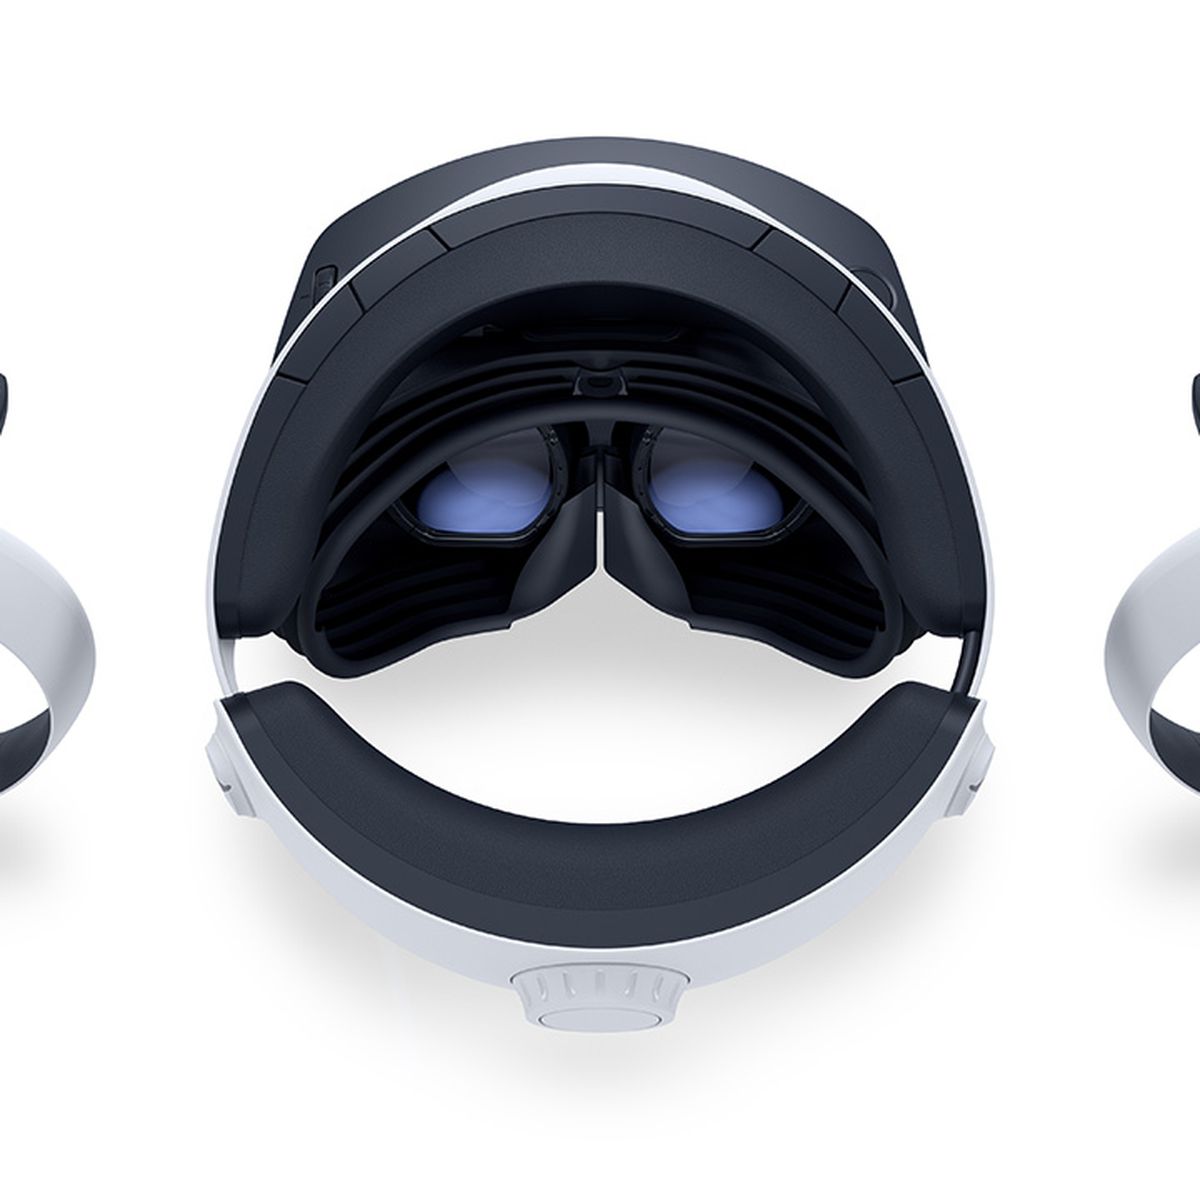 PSVR 2-headsetet, sett från ovan, vilar på en vit yta, flankerad av båda VR2 Sense-kontrollerna